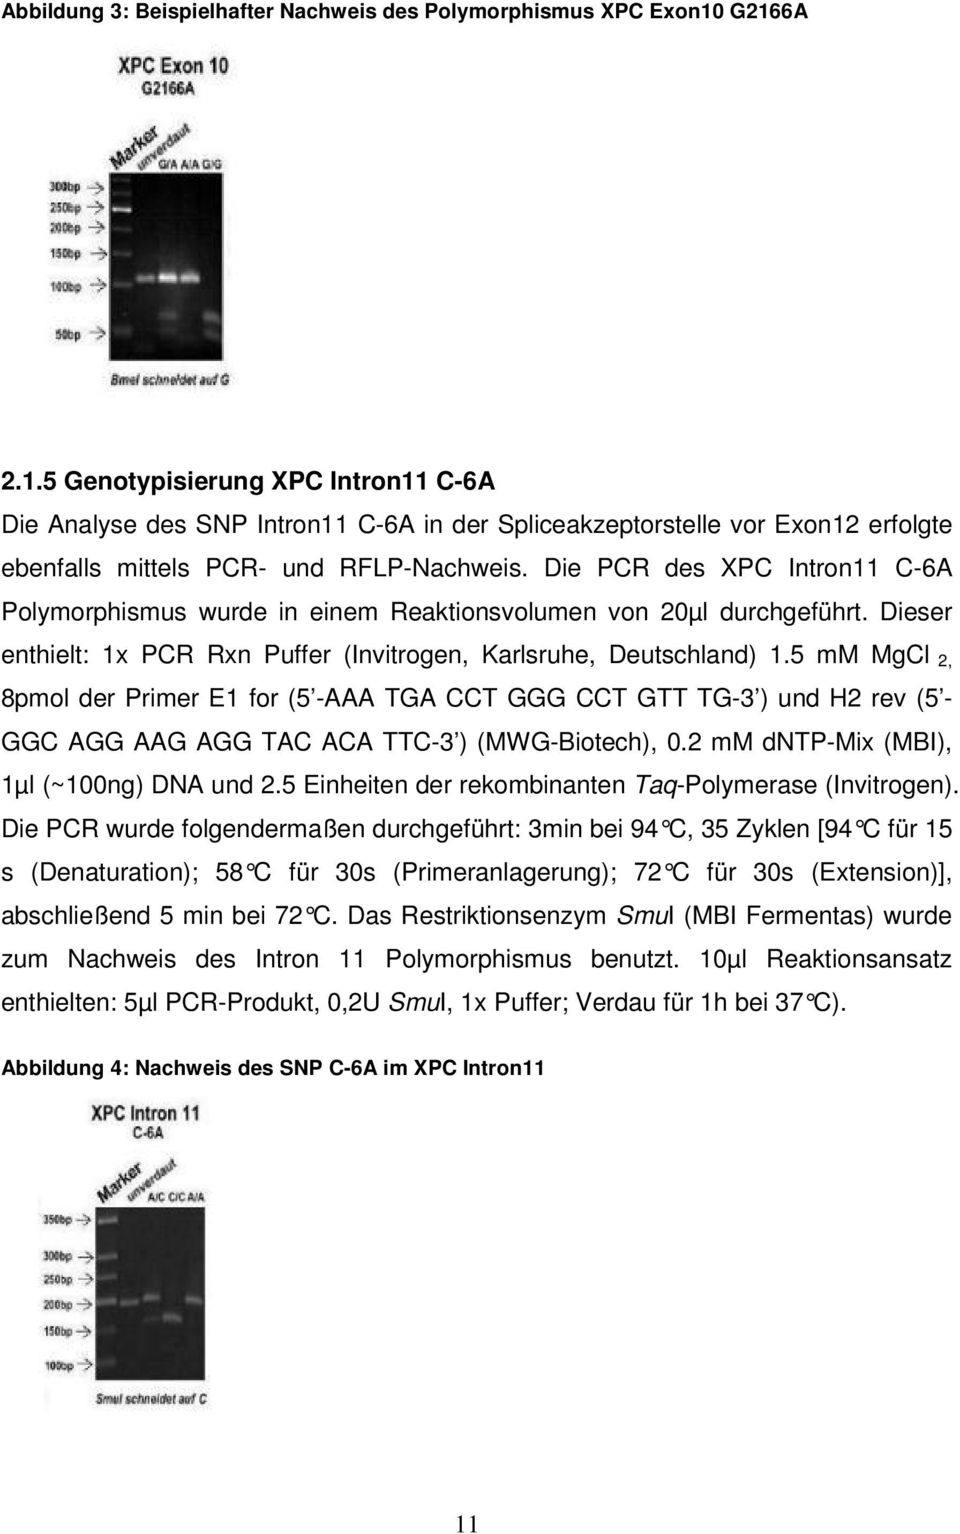 Die PCR des XPC Intron11 C-6A Polymorphismus wurde in einem Reaktionsvolumen von 20µl durchgeführt. Dieser enthielt: 1x PCR Rxn Puffer (Invitrogen, Karlsruhe, Deutschland) 1.